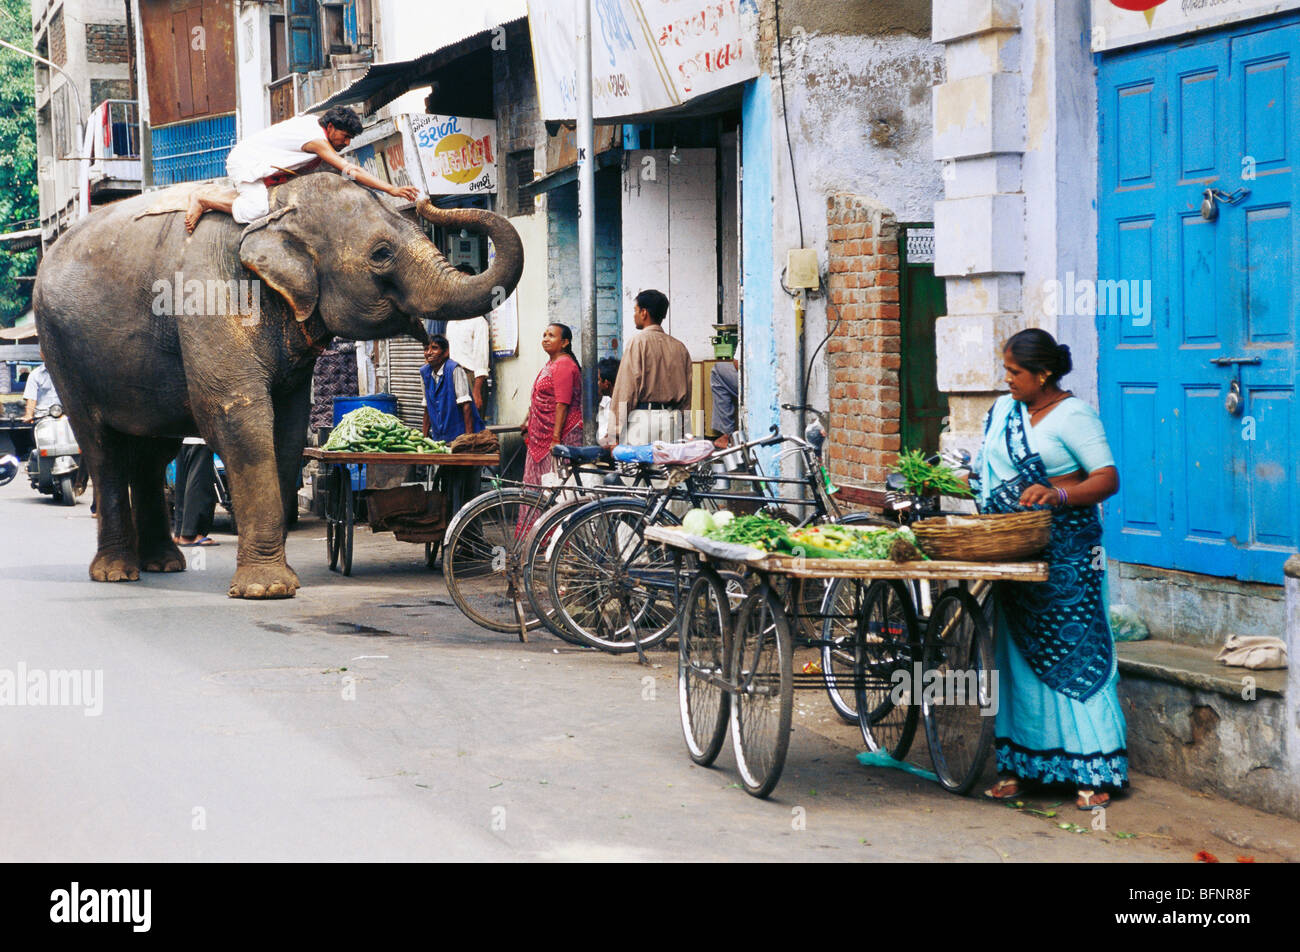 Elefant bettelt Almosensammelei auf der Straße; Ahmedabad; Gujarat; Indien; asien Stockfoto